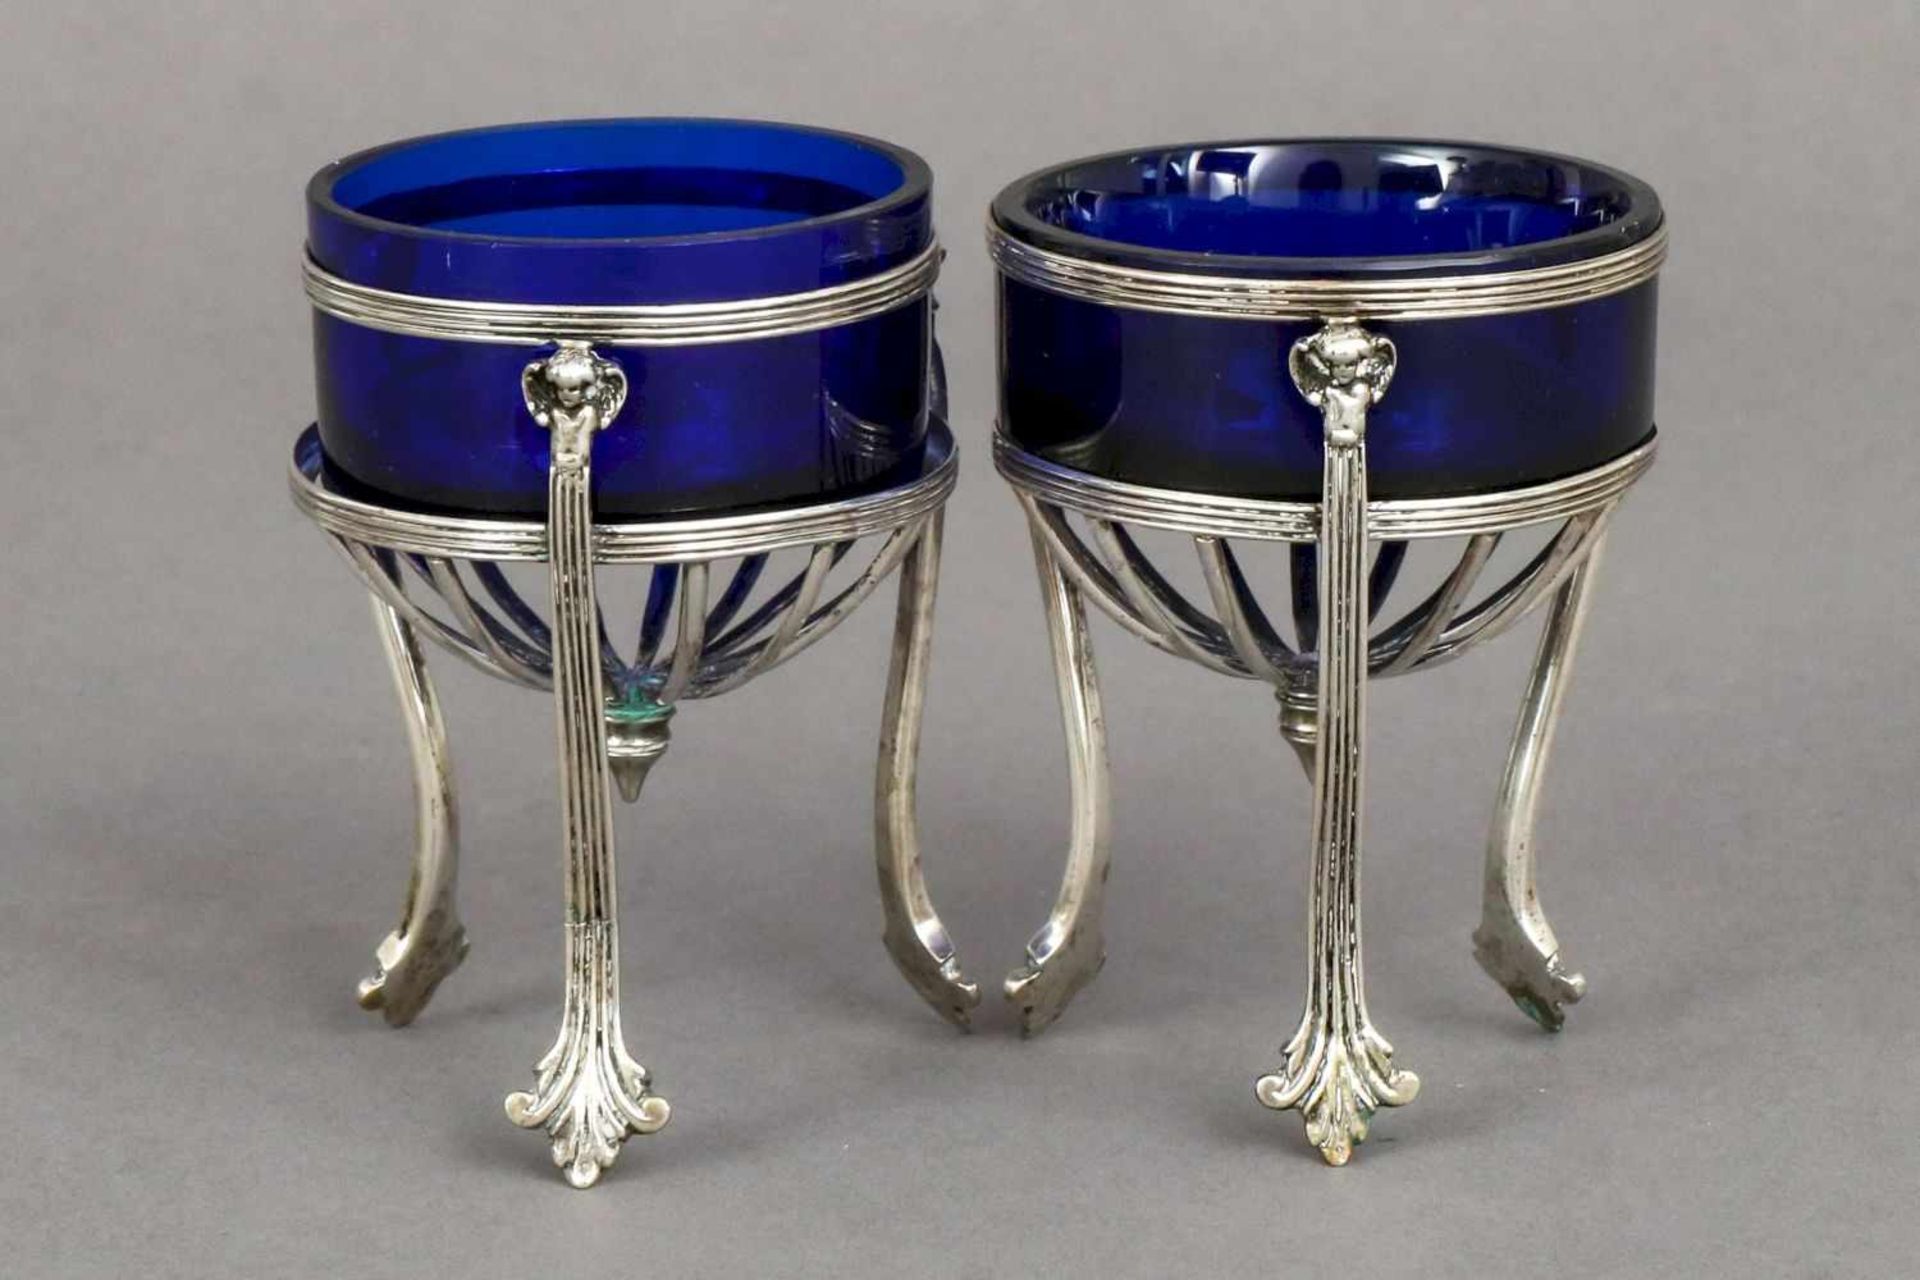 Paar ¨Empire¨ SalierenSilber und blaues Glas, wohl um 1900, runde Glaseinsätze in hohem, 3-